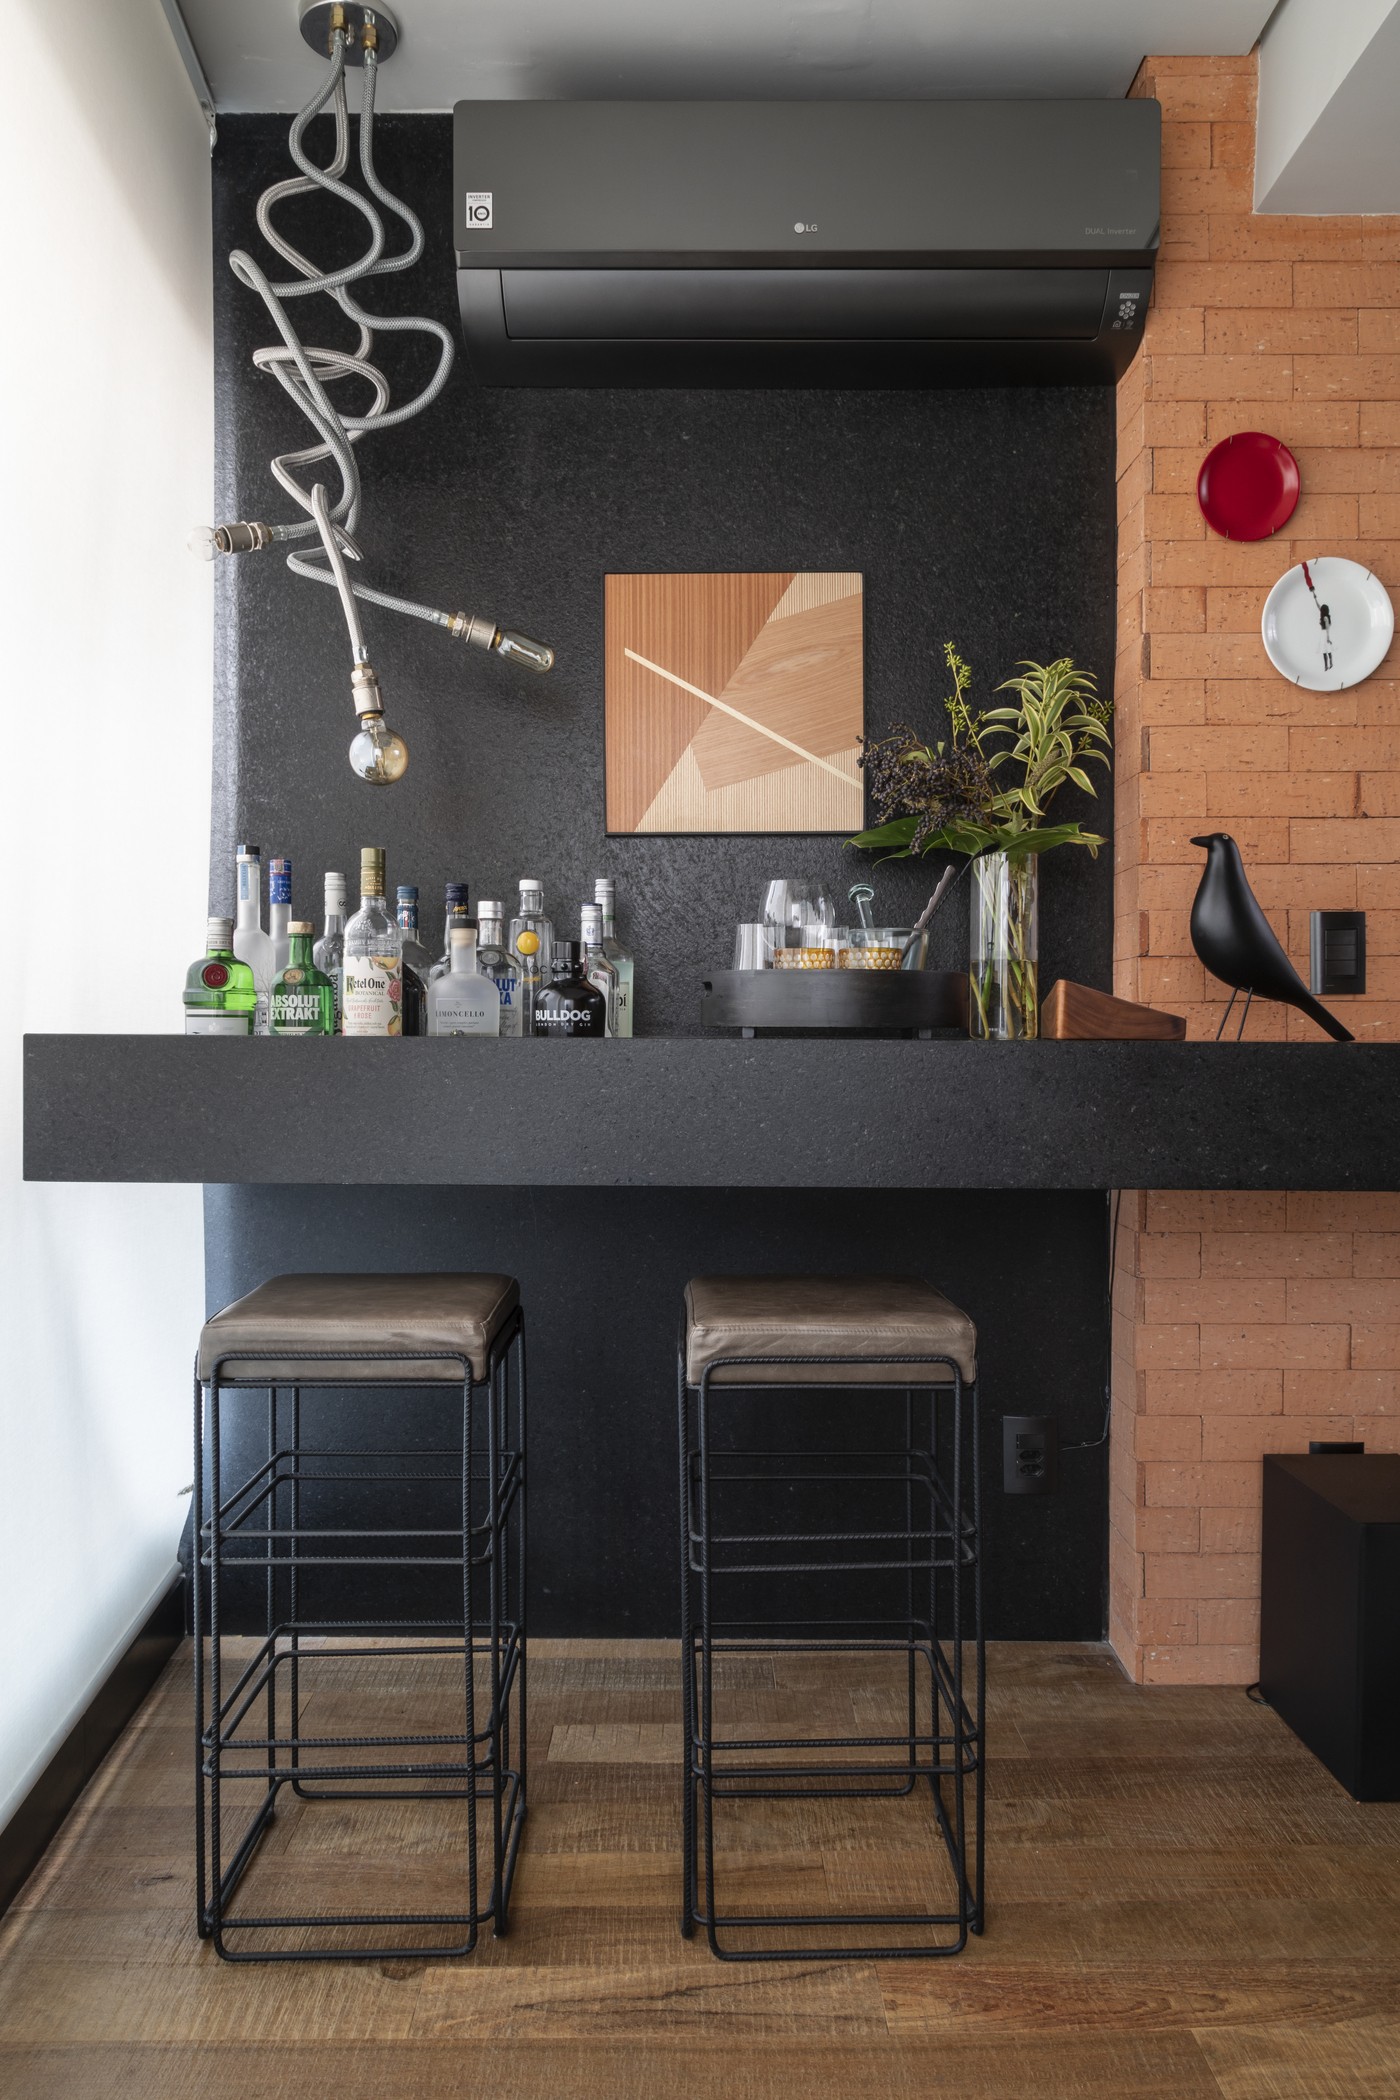 Décor do dia: living com estilo industrial tem bar e soluções de armazenamento (Foto: Evelyn Müller )